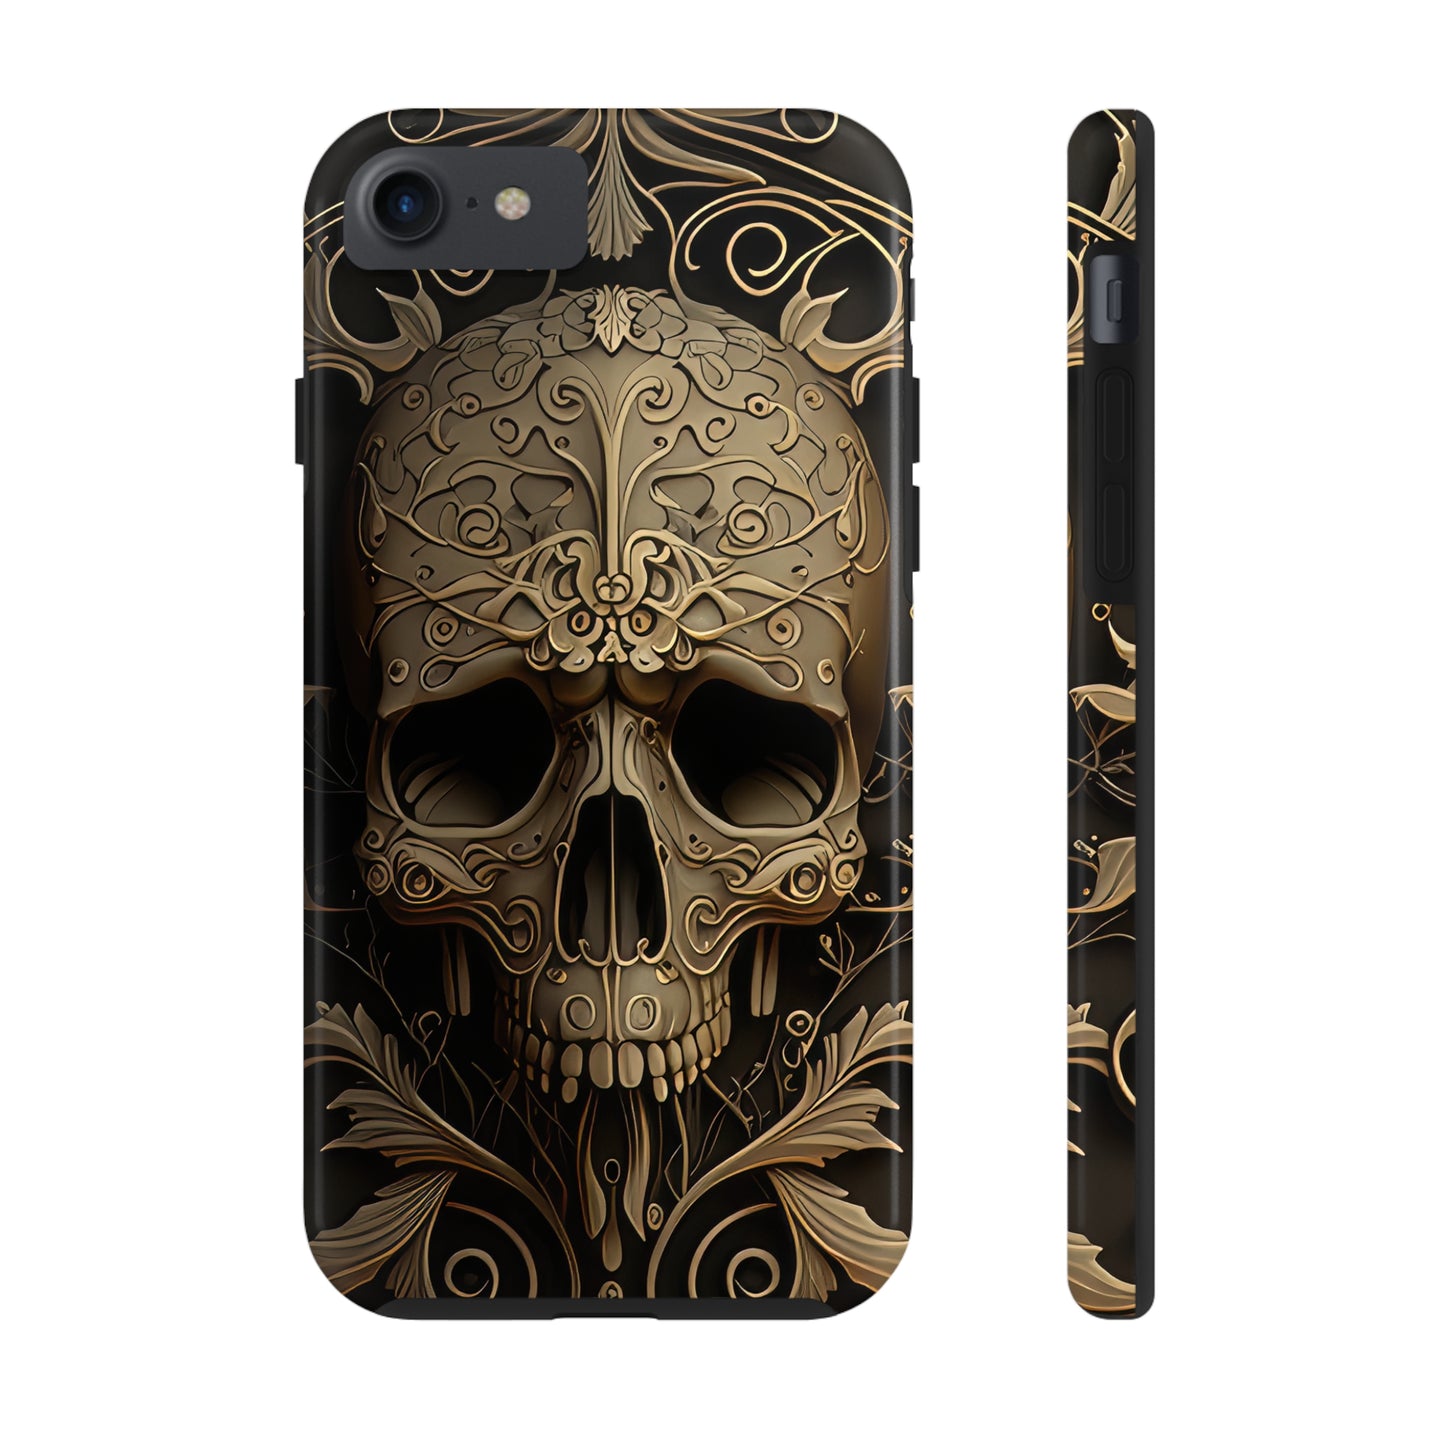 Metallic Chrome Skulls and classic Designed 5 Phone Cases